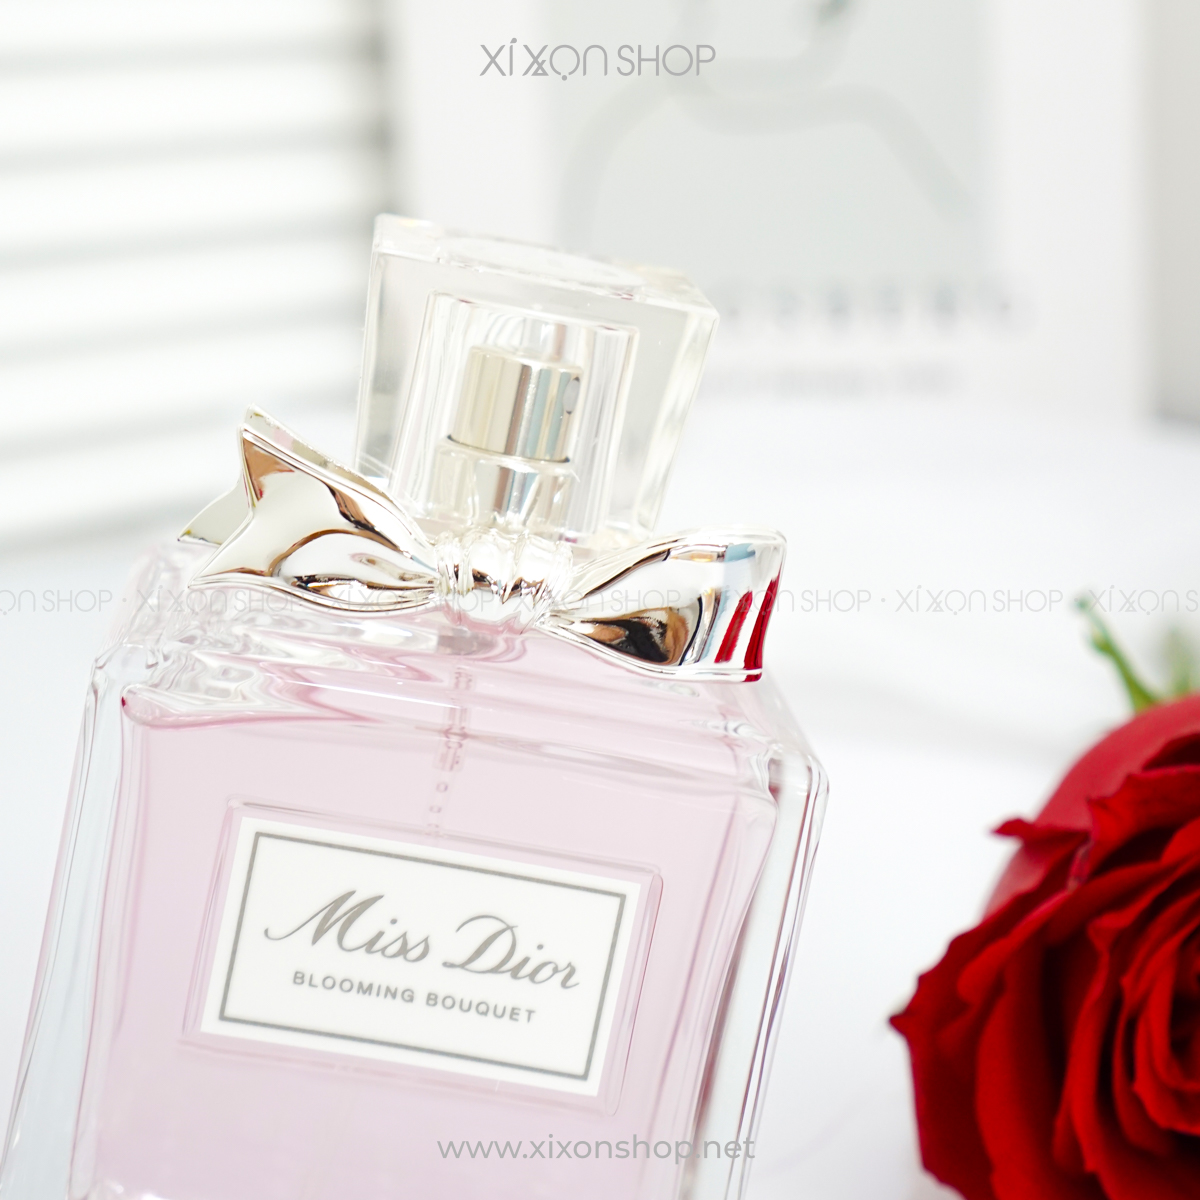 Nước hoa Miss Dior Blooming Bouquet mini 5ml